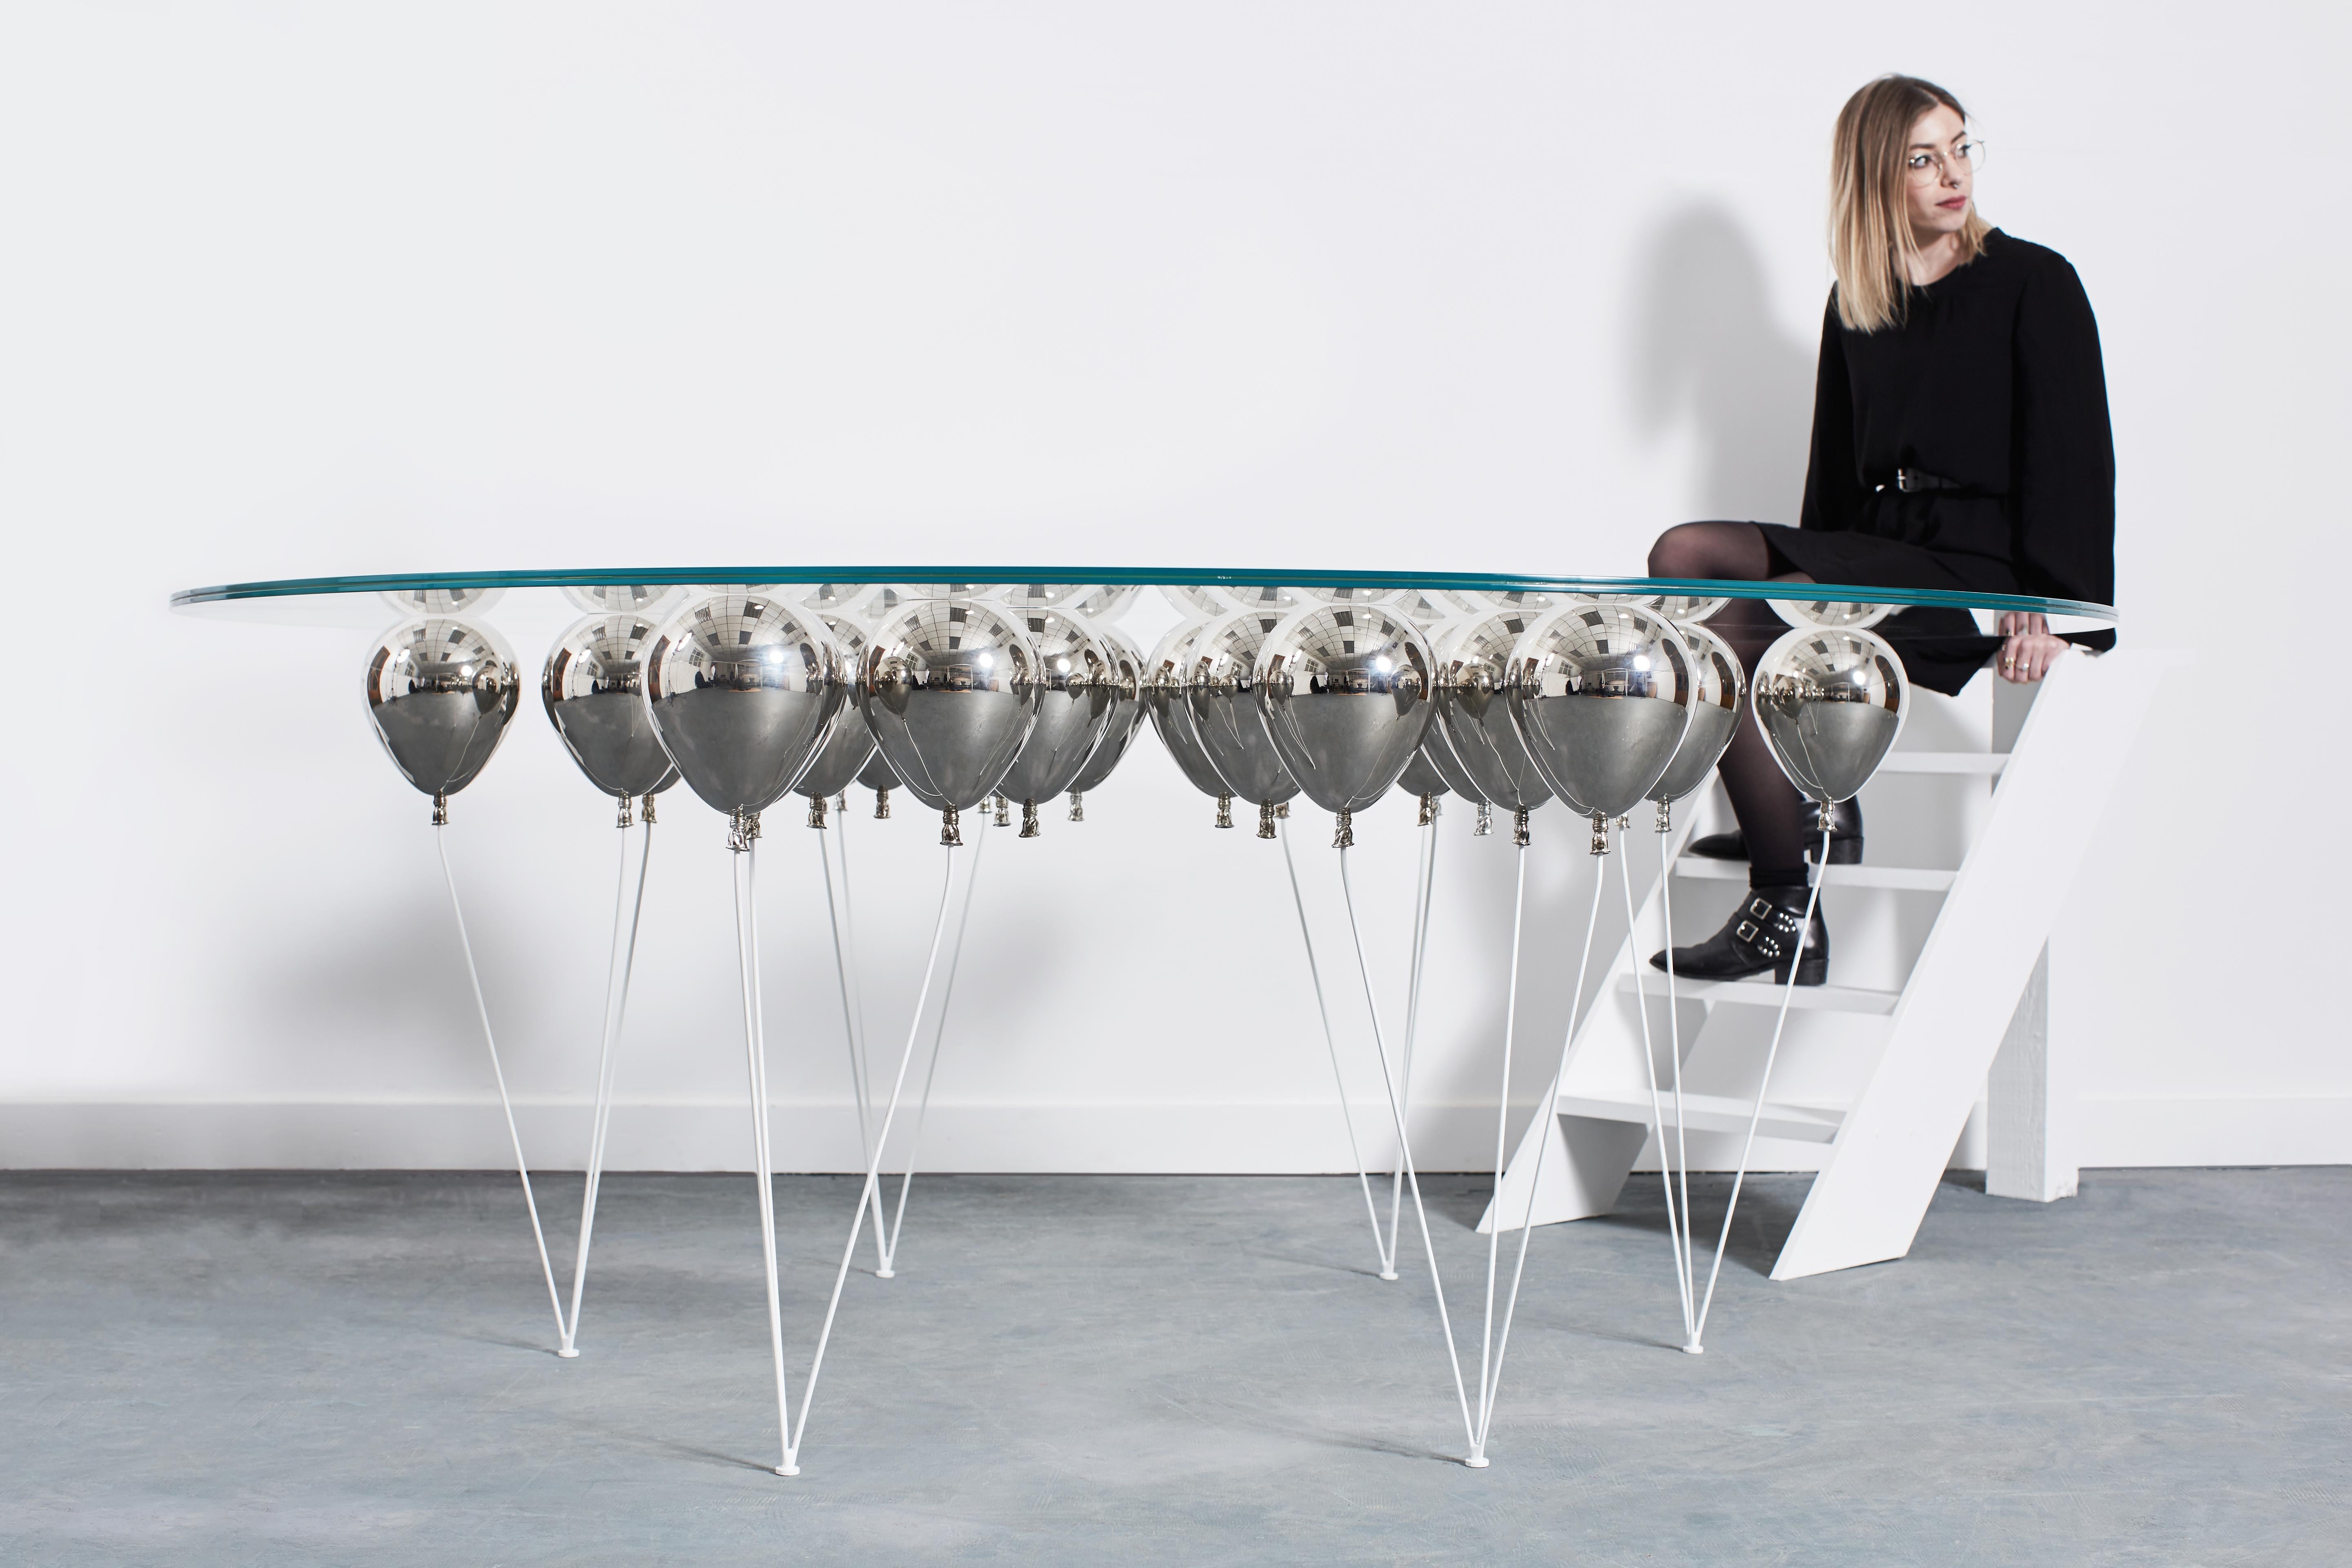 Der UP Balloon Dining Table ist ein verspieltes Trompe L'Oeil mit einer Reihe von Ballons, die die Illusion einer schwebenden Glastischplatte erwecken. 

Ein aufmunterndes Design von Chris Duffy, das die Fantasie anregt, mit den Konzepten von